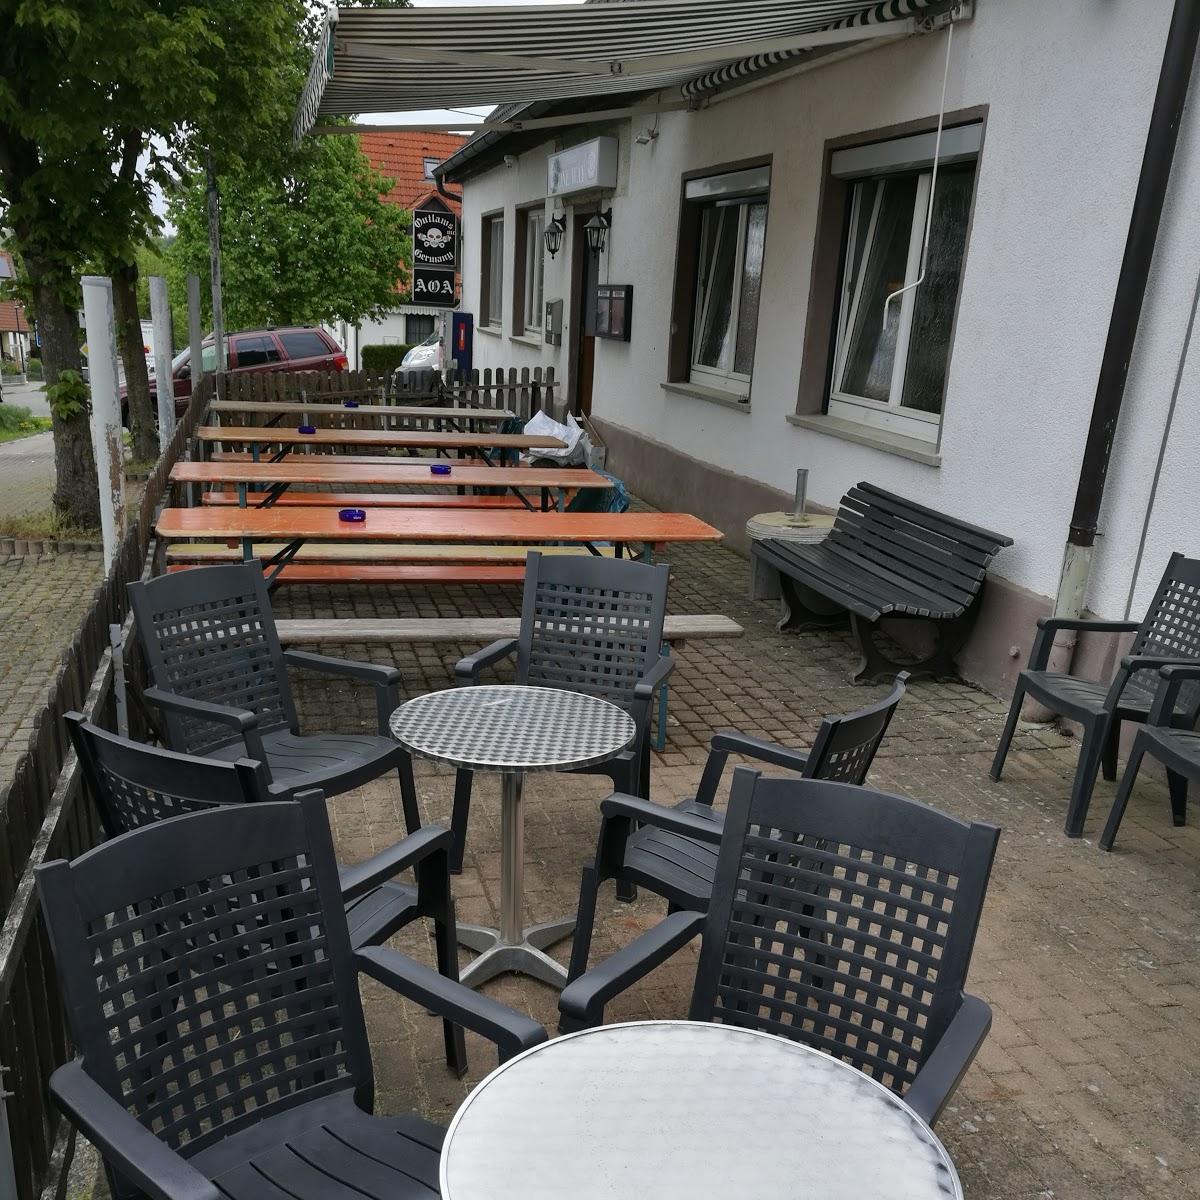 Restaurant "Pilsbar Oneway" in  Hermaringen